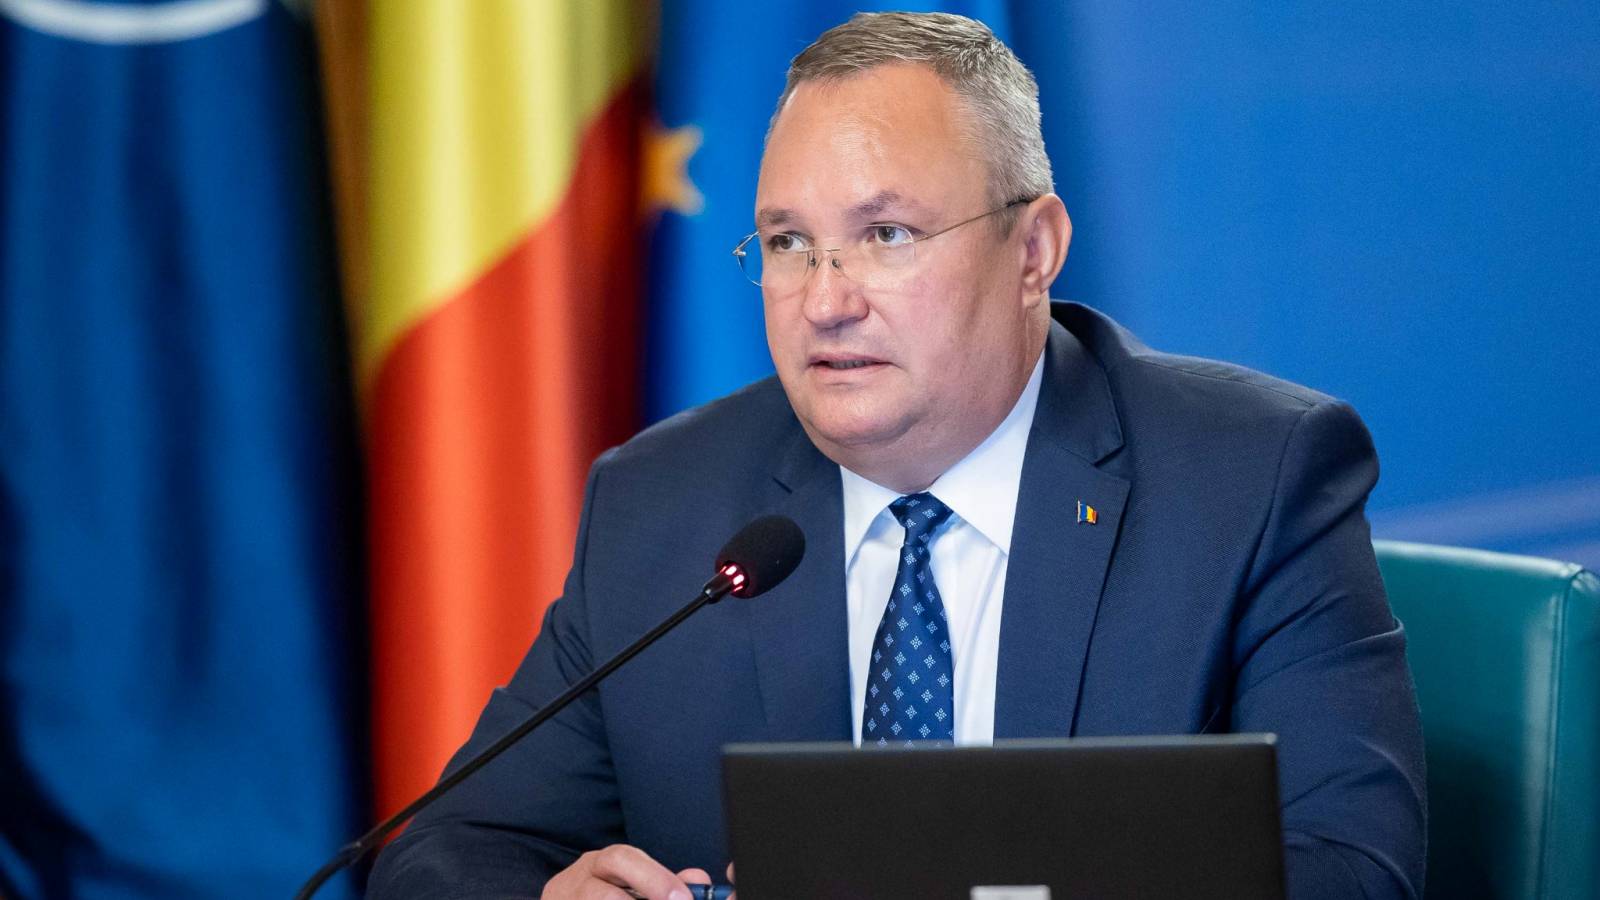 Nicolae Ciuca besprak de uitbreiding van het strategische partnerschap met de premier van Moldavië